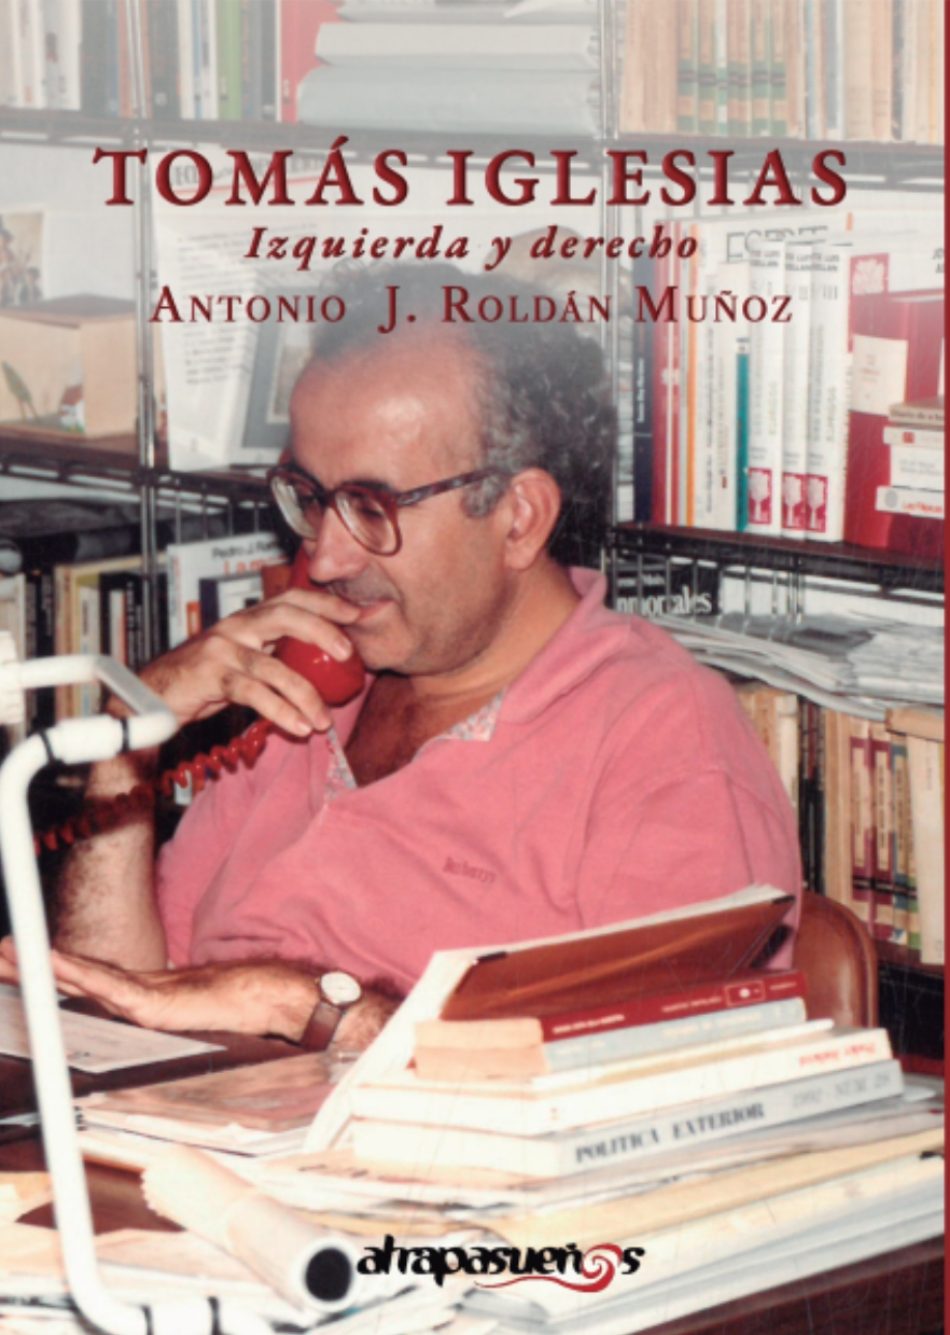 Se publica la biografía del  jurista y defensor de los derechos humanos: “Tomás Iglesias, izquierda y derecho”